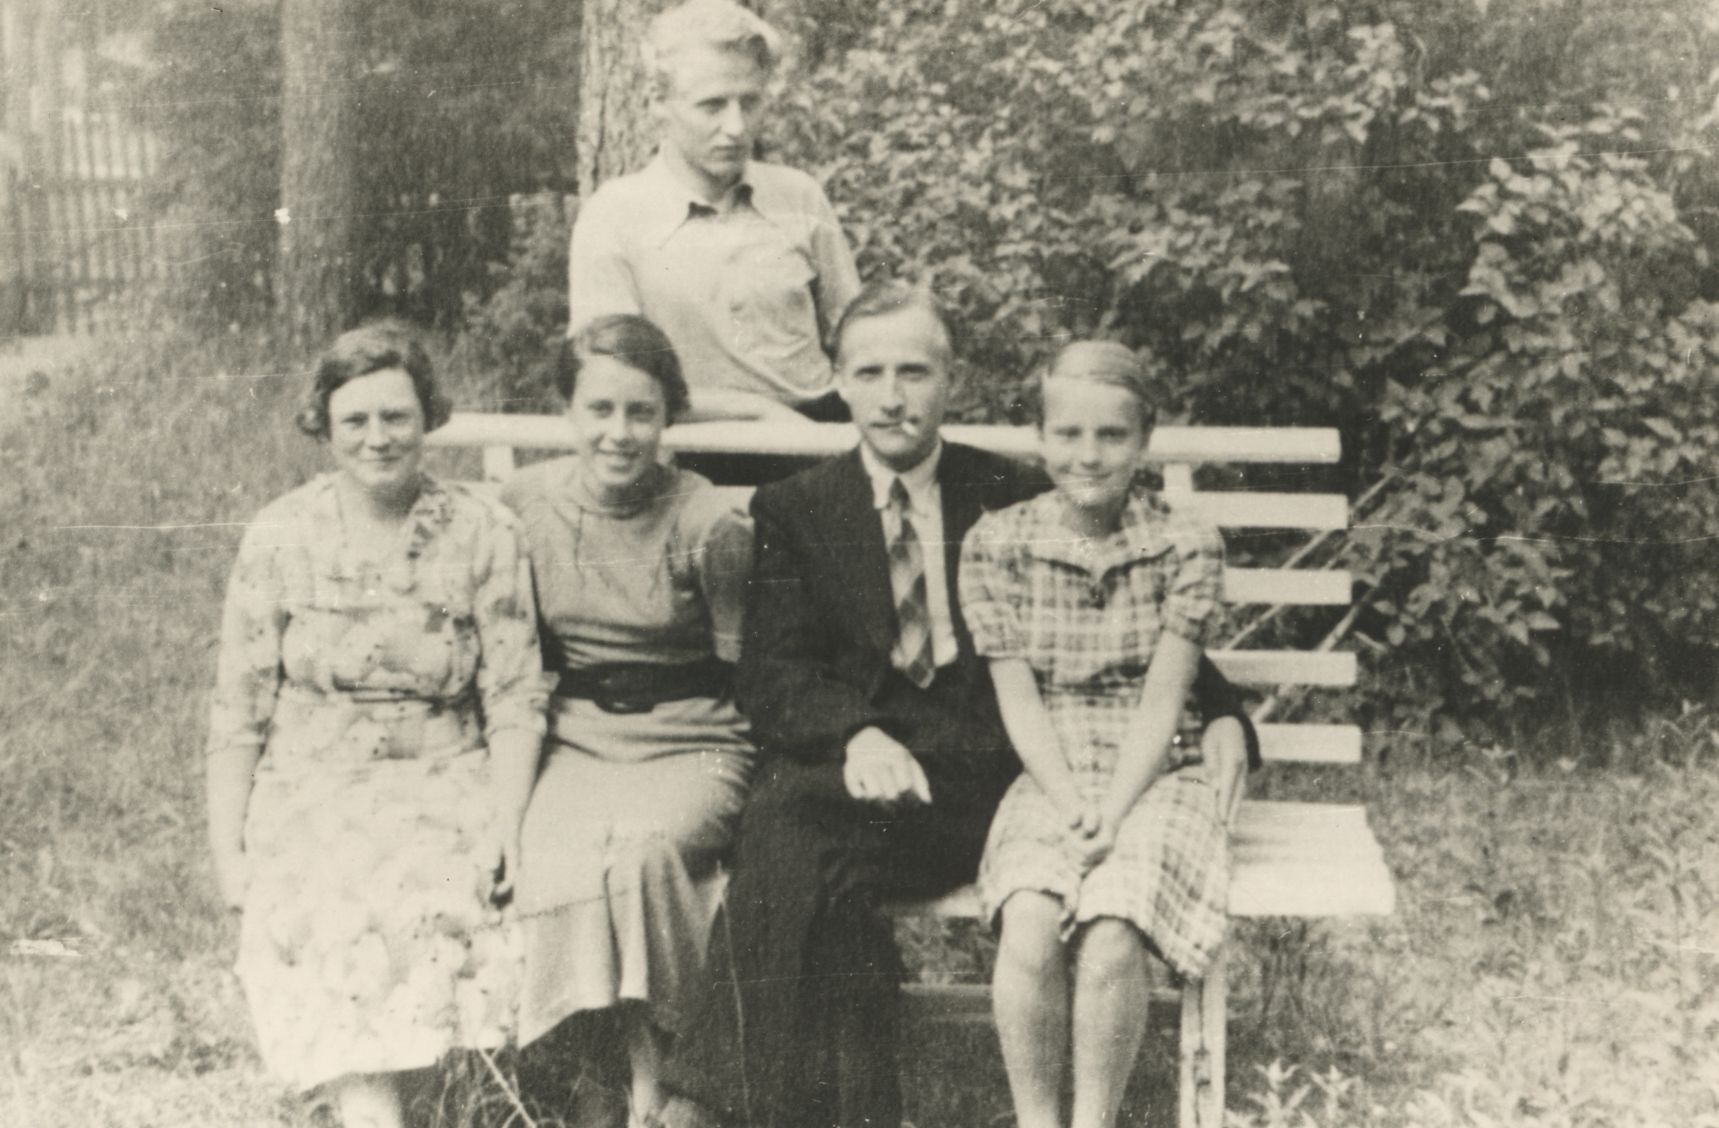 Jaan Kärner with the family Elvas (J. Kärner 35) approx. 1936 - 1937 a